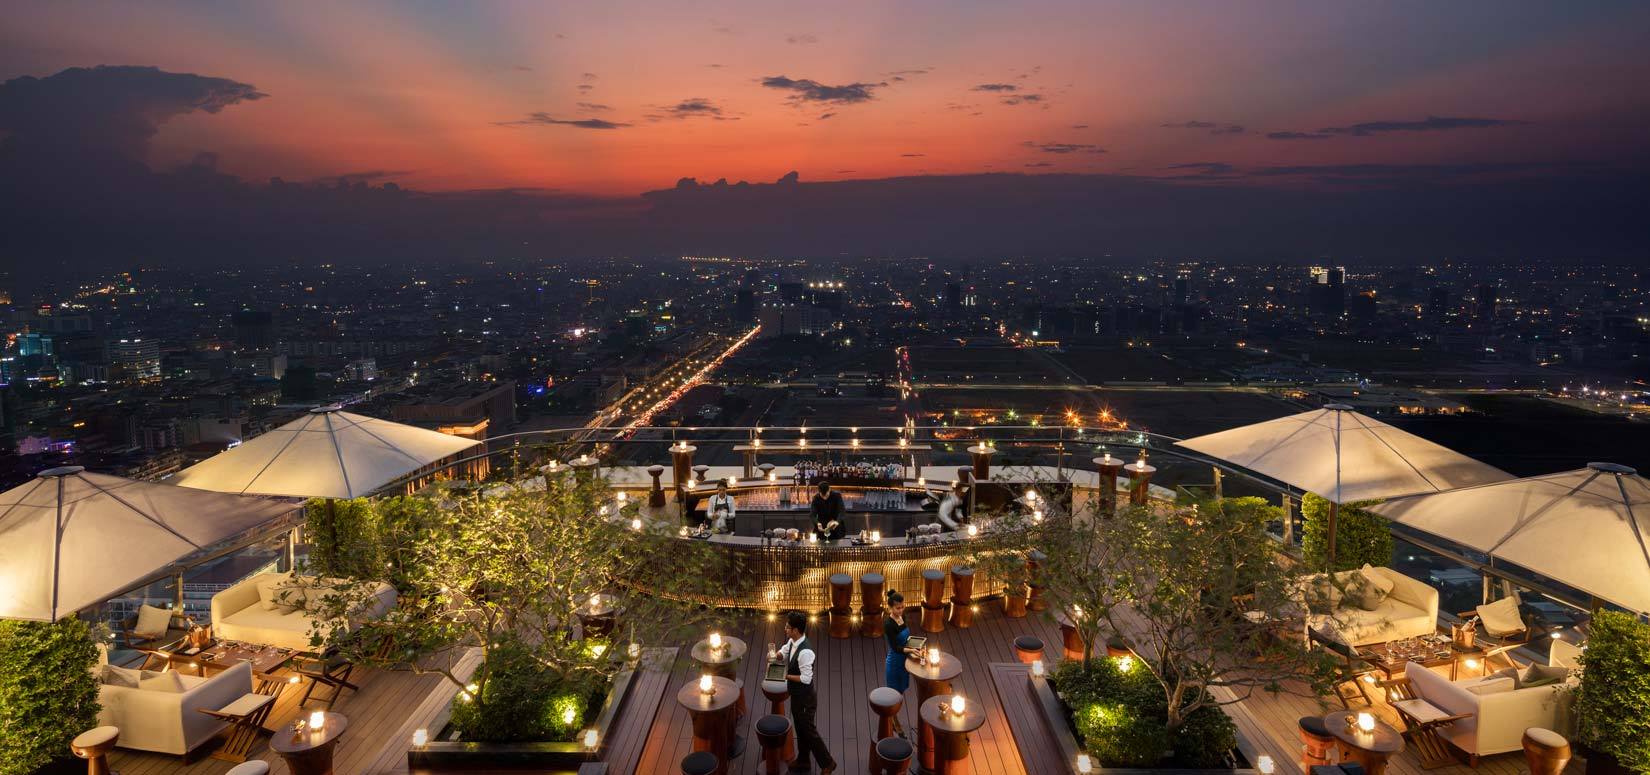 柬埔寨金边 · 瑰丽酒店Rosewood 3晚4天度假_八大洲旅游